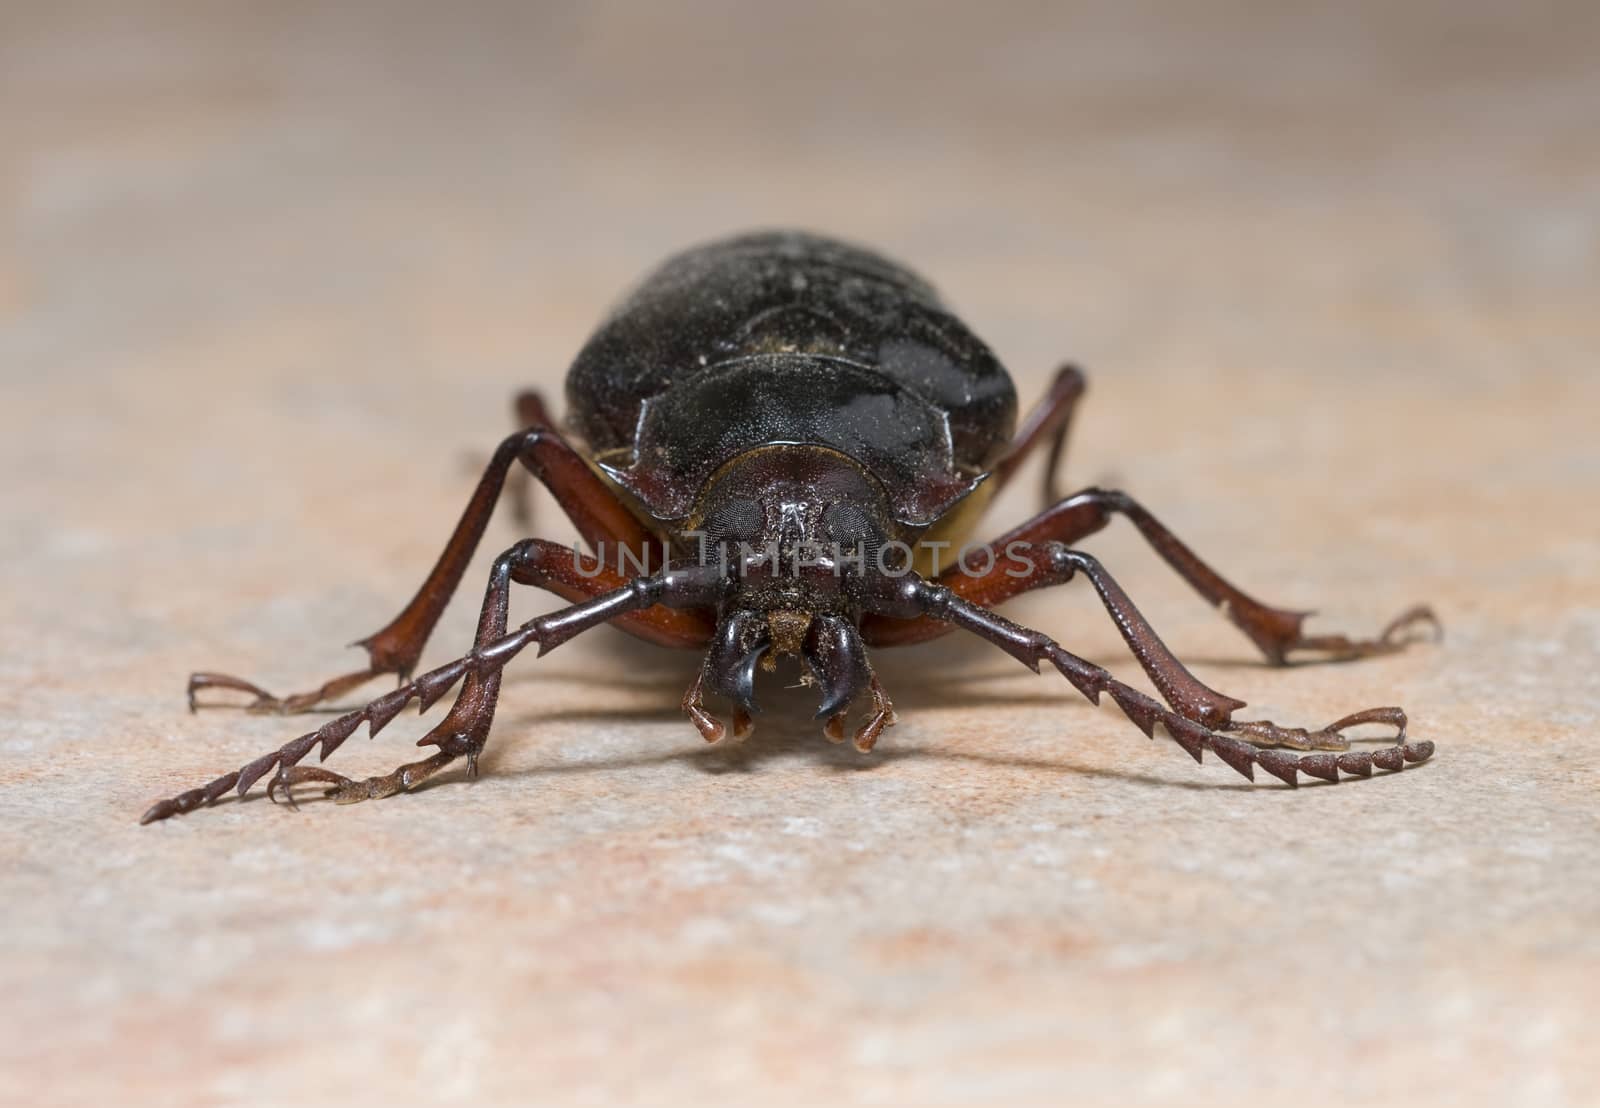 California prionus beetle (Prionus californicus) also called pri by Njean